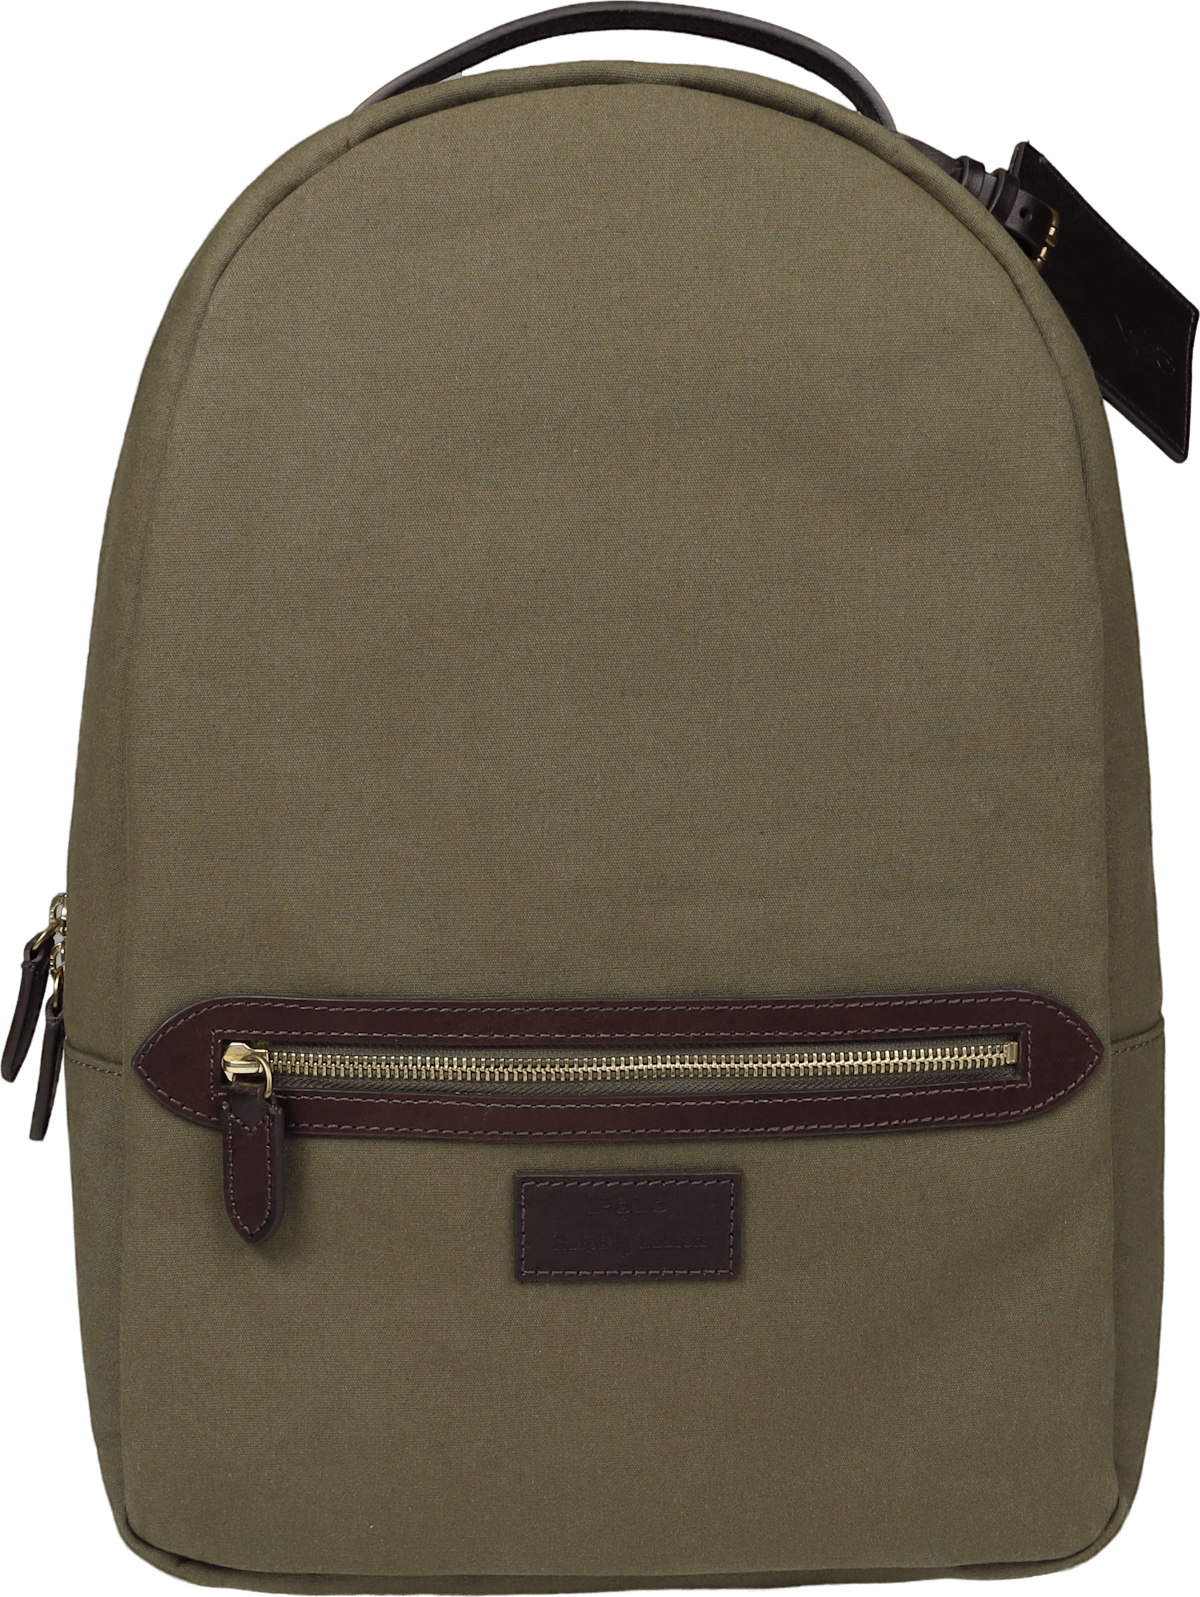 Backpack-backpack-canvas Defender Green